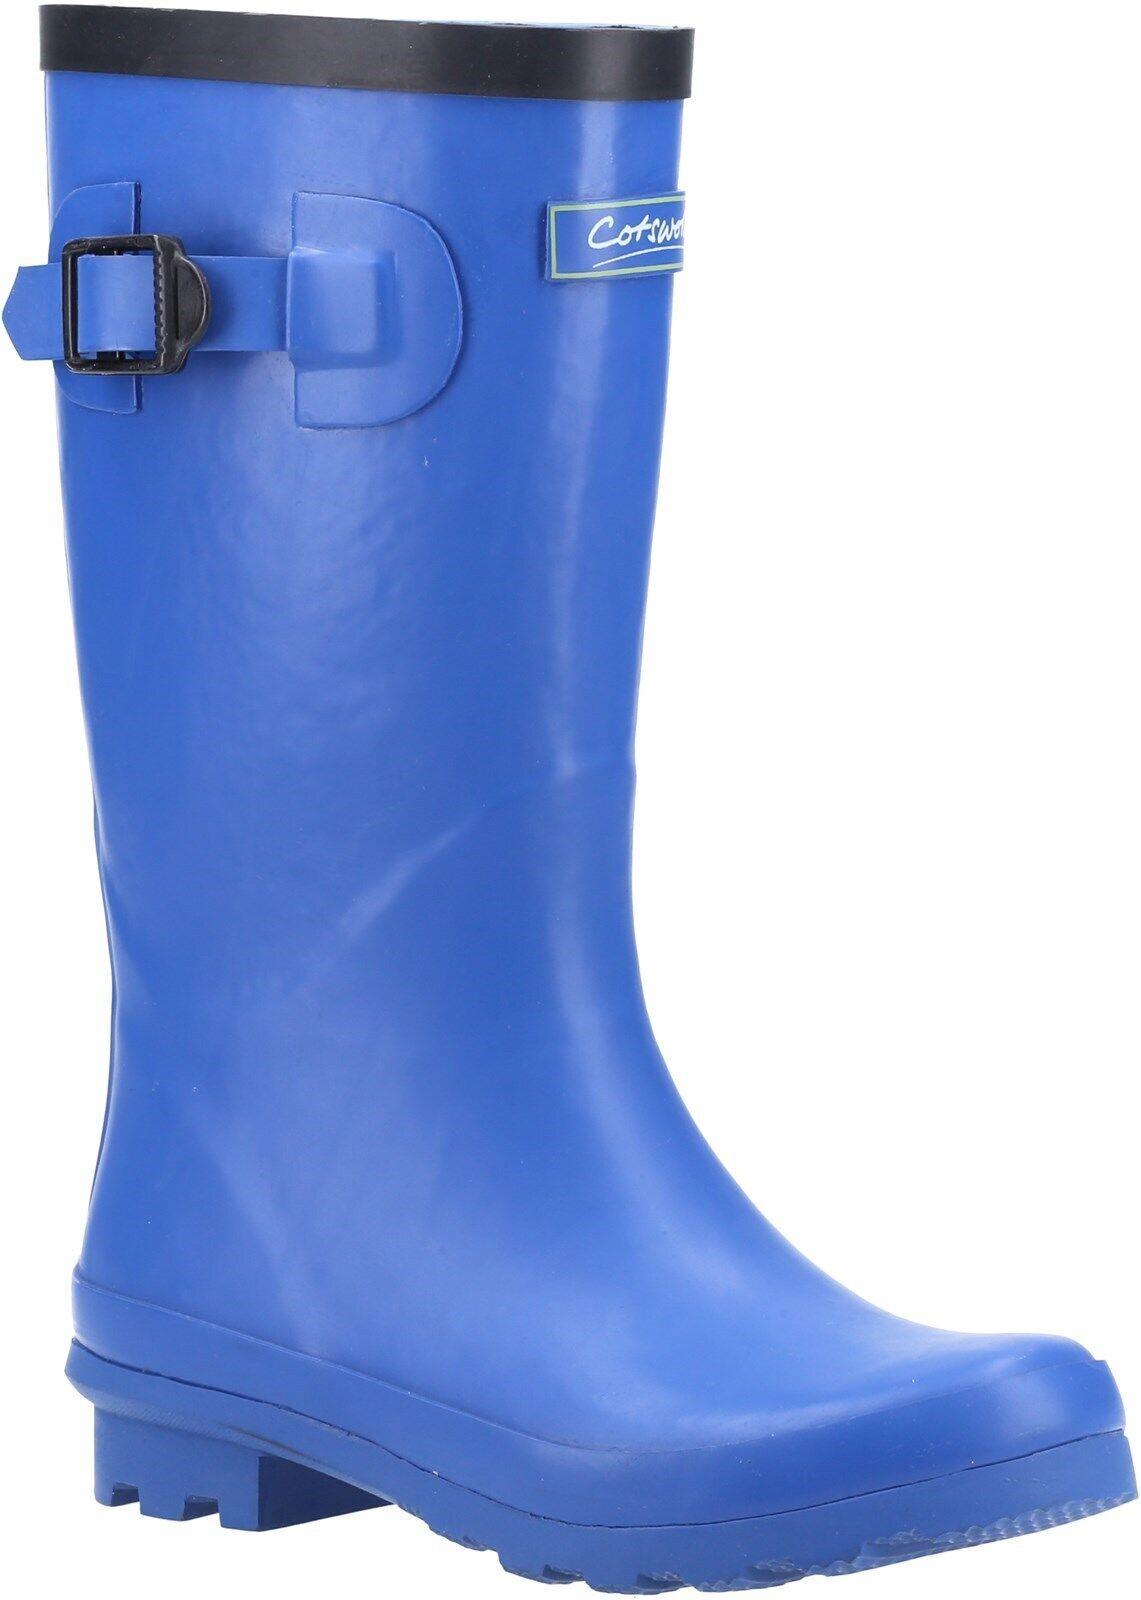 Cotswold Fairweather Junior kid's blue rubber waterproof wellington boot